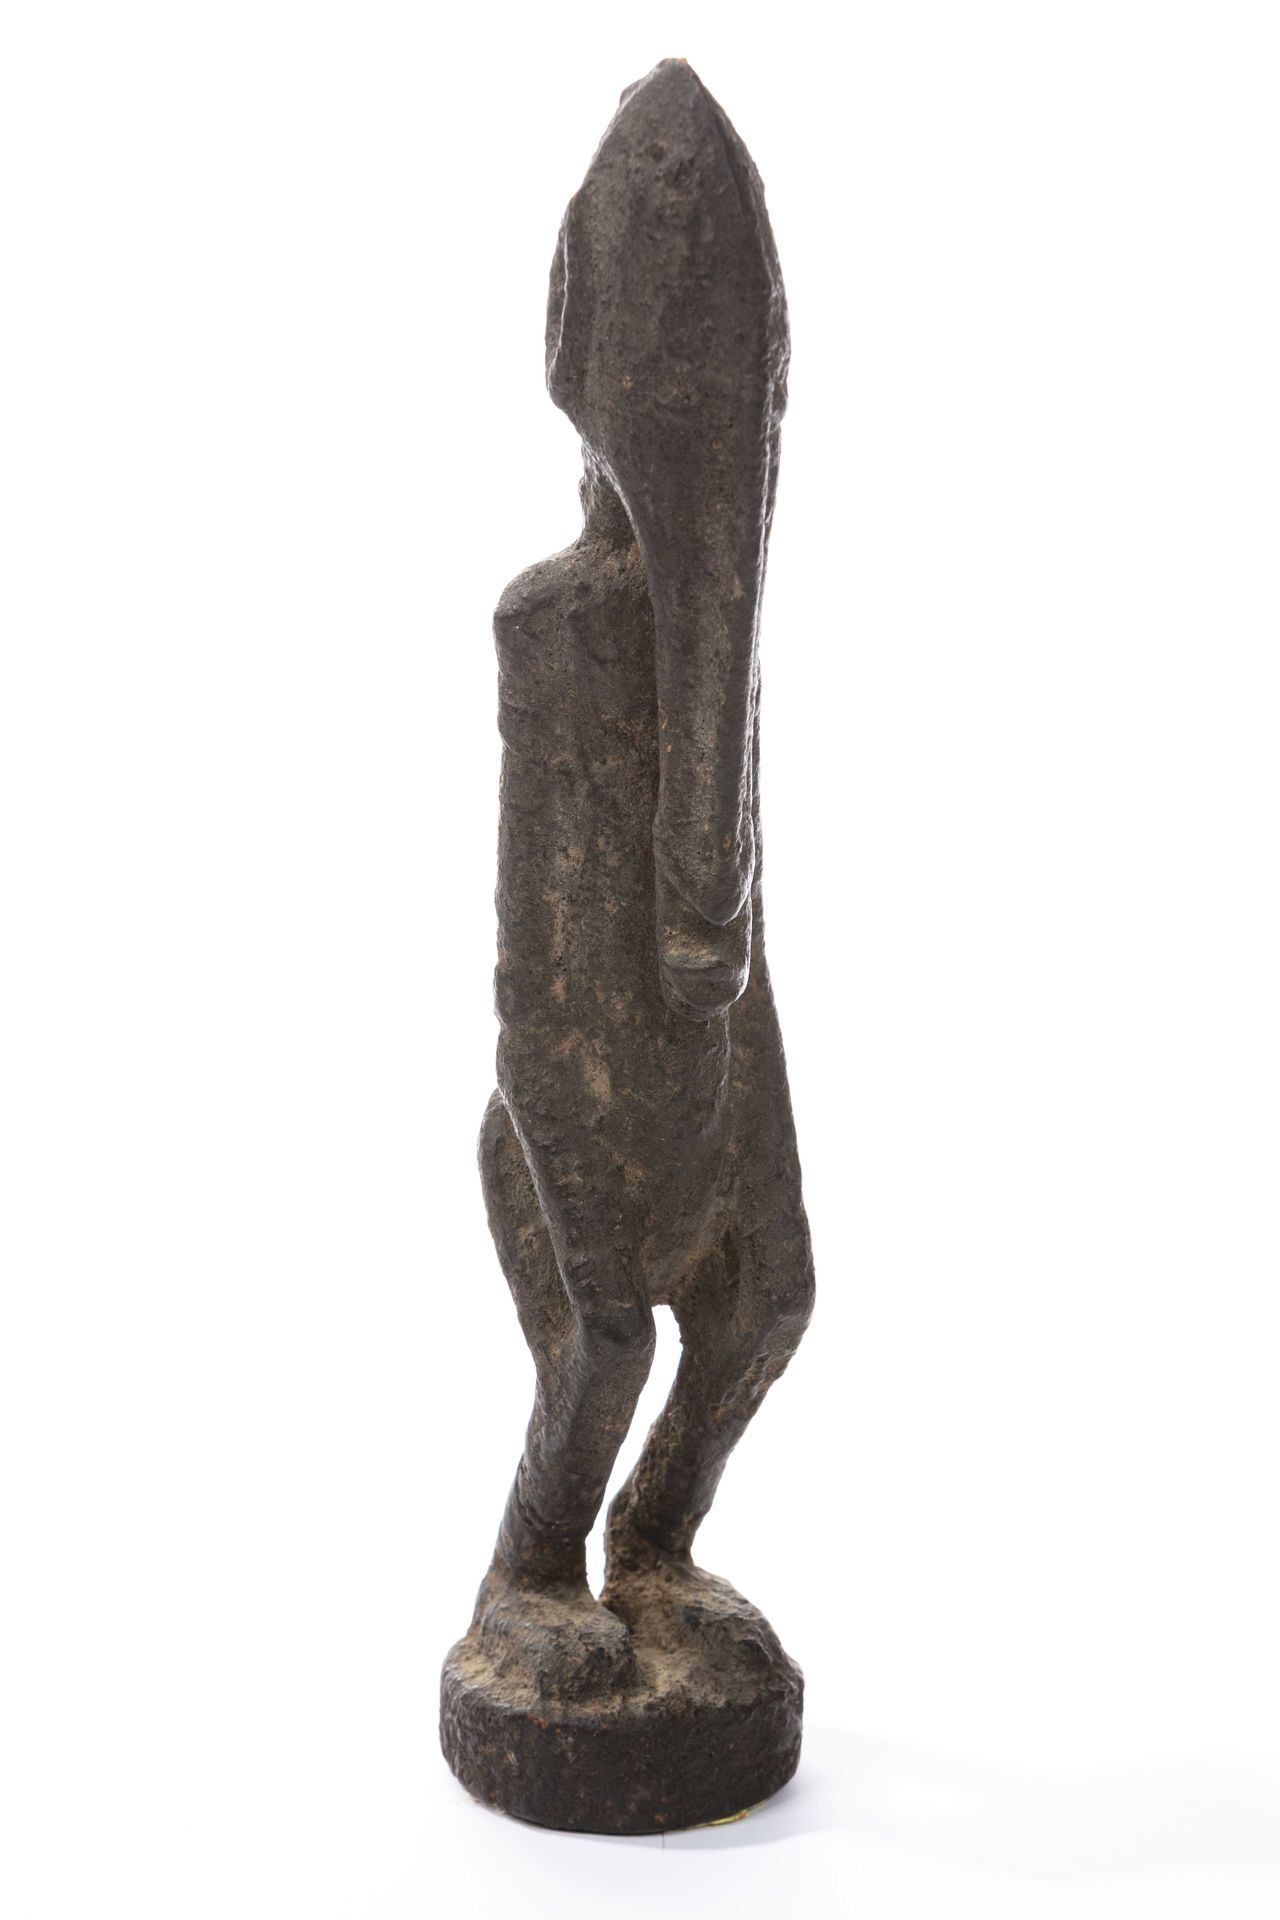 Null 塞皮克风格的男性雕像，巴布亚新几内亚
木头 
高度：29.5厘米
描述：变形的人物，有动态的半弯曲的腿，两只手放在上面。 
变形的人物，两只手放在半弯&hellip;